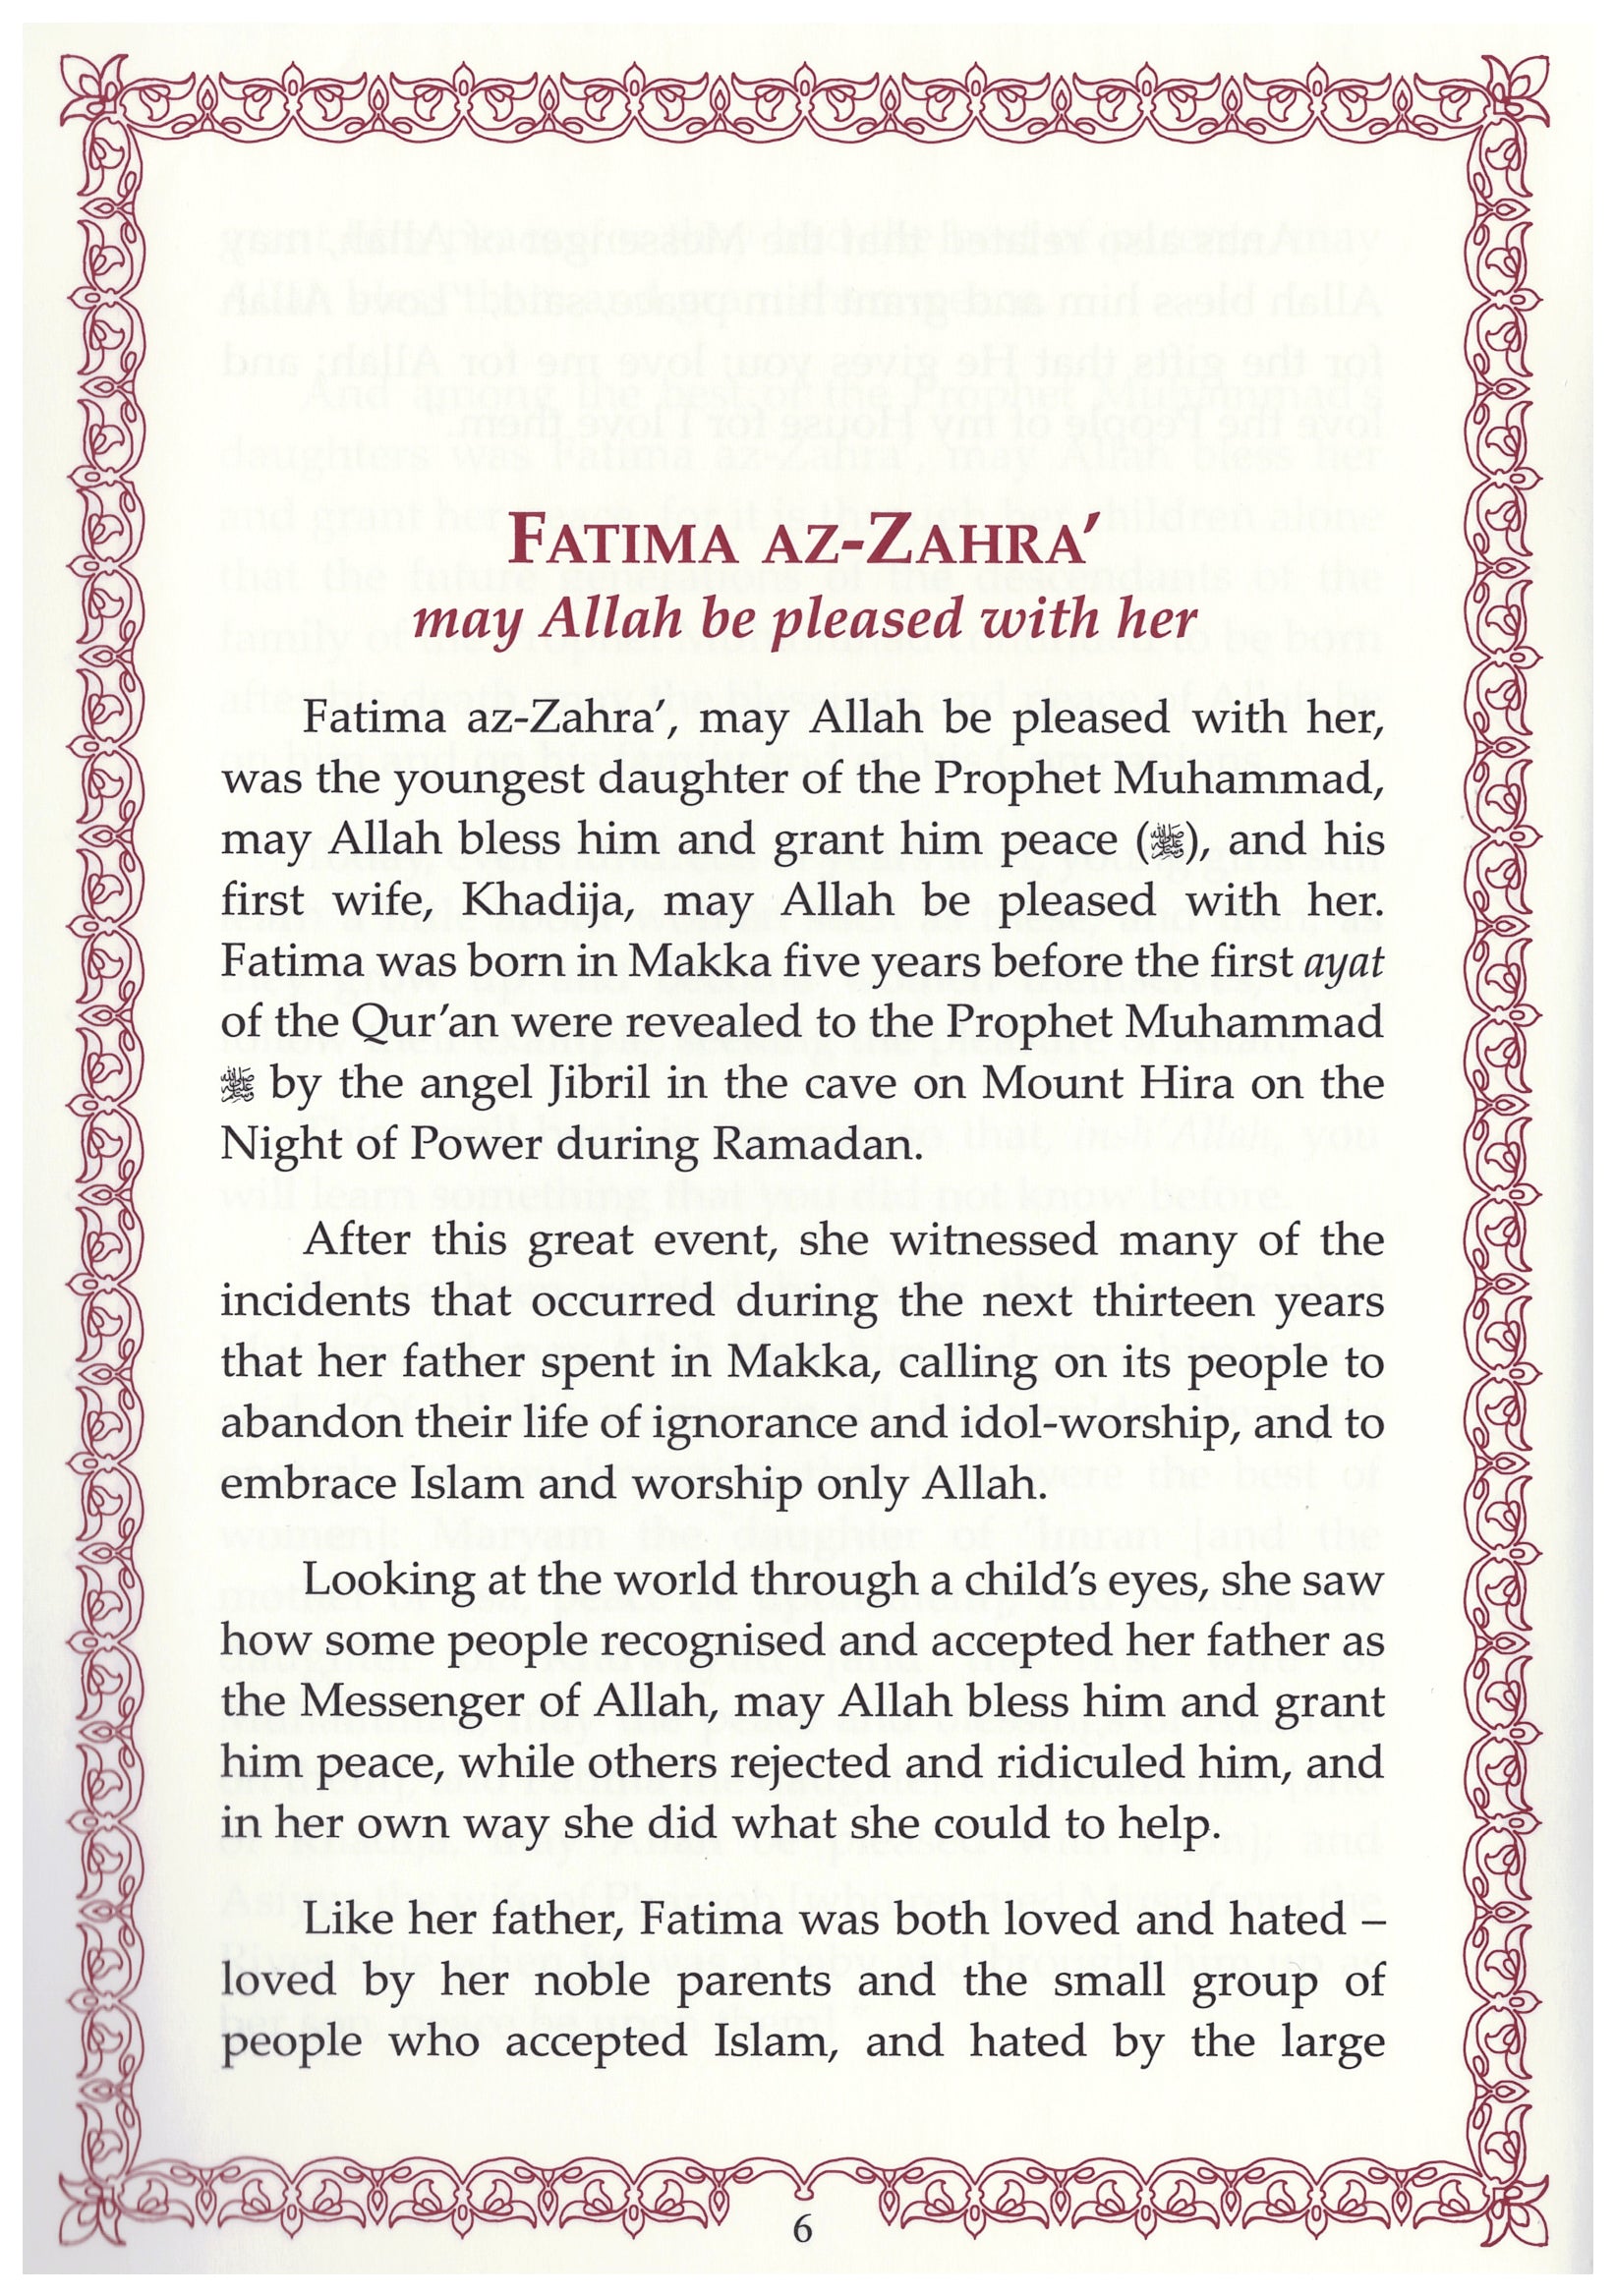 Fatima Az-Zahra (RA)